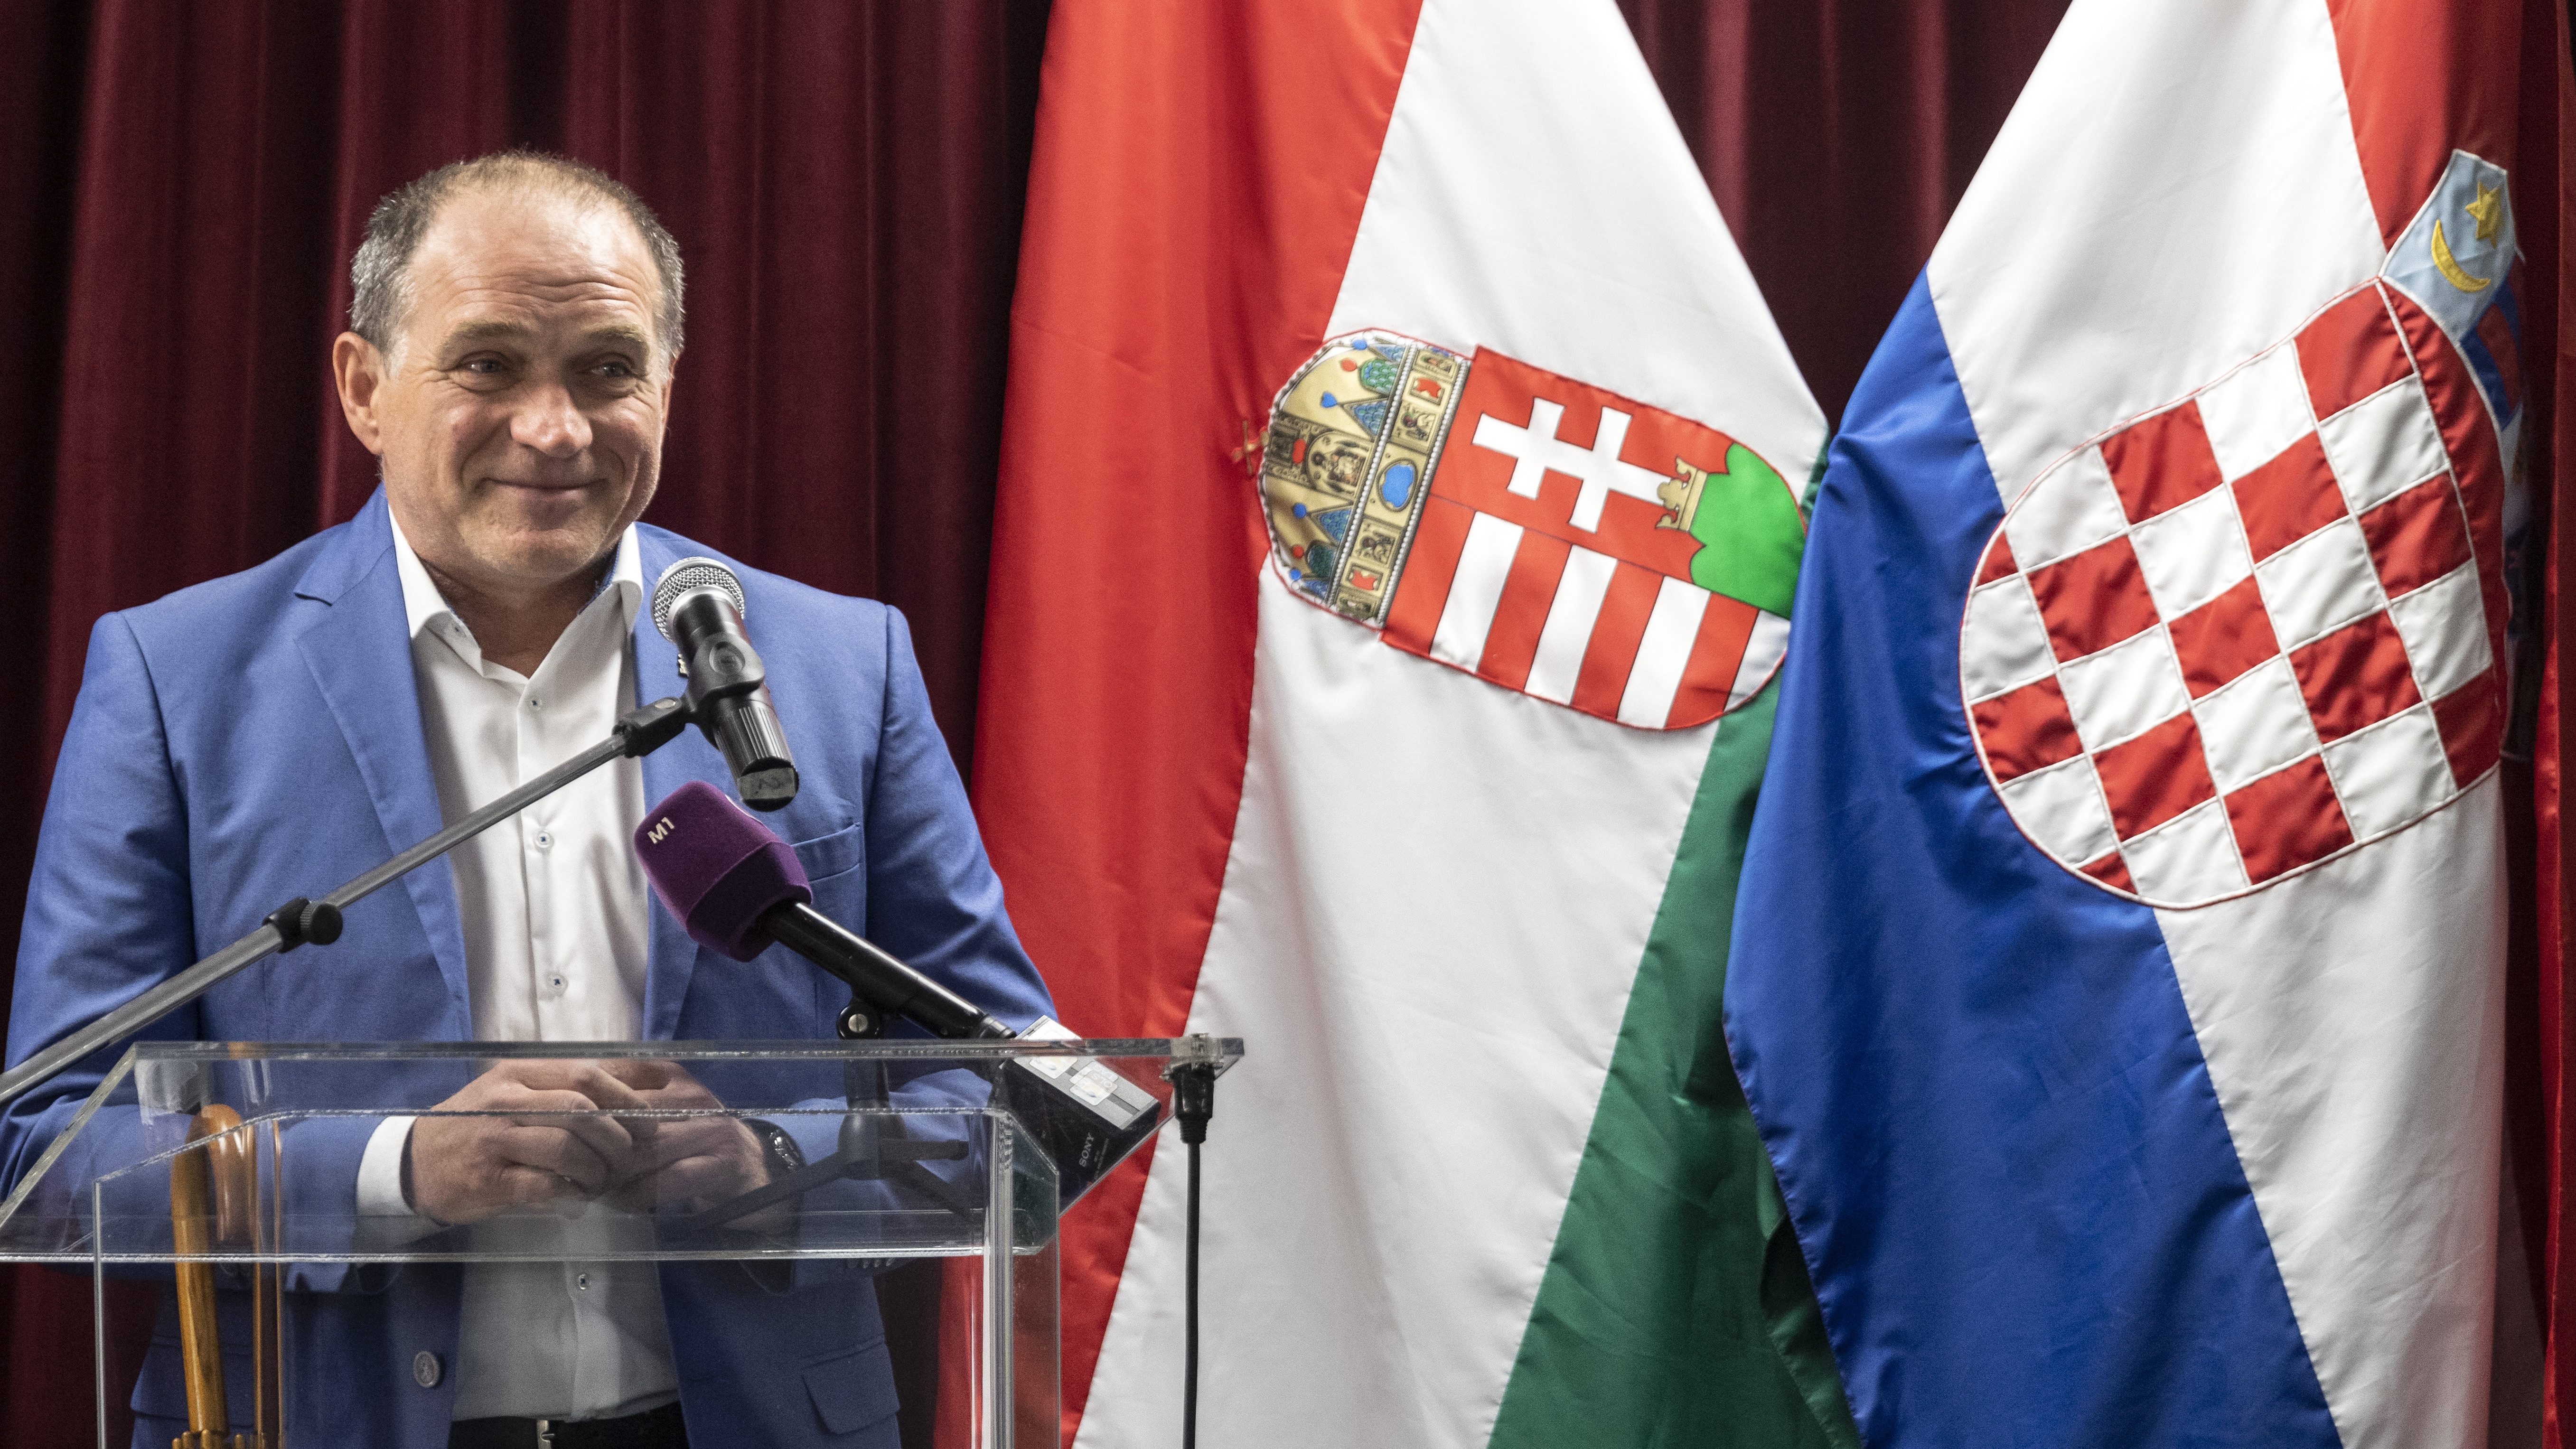 Lemondott képviselői mandátumáról Ferencváros korábbi polgármestere